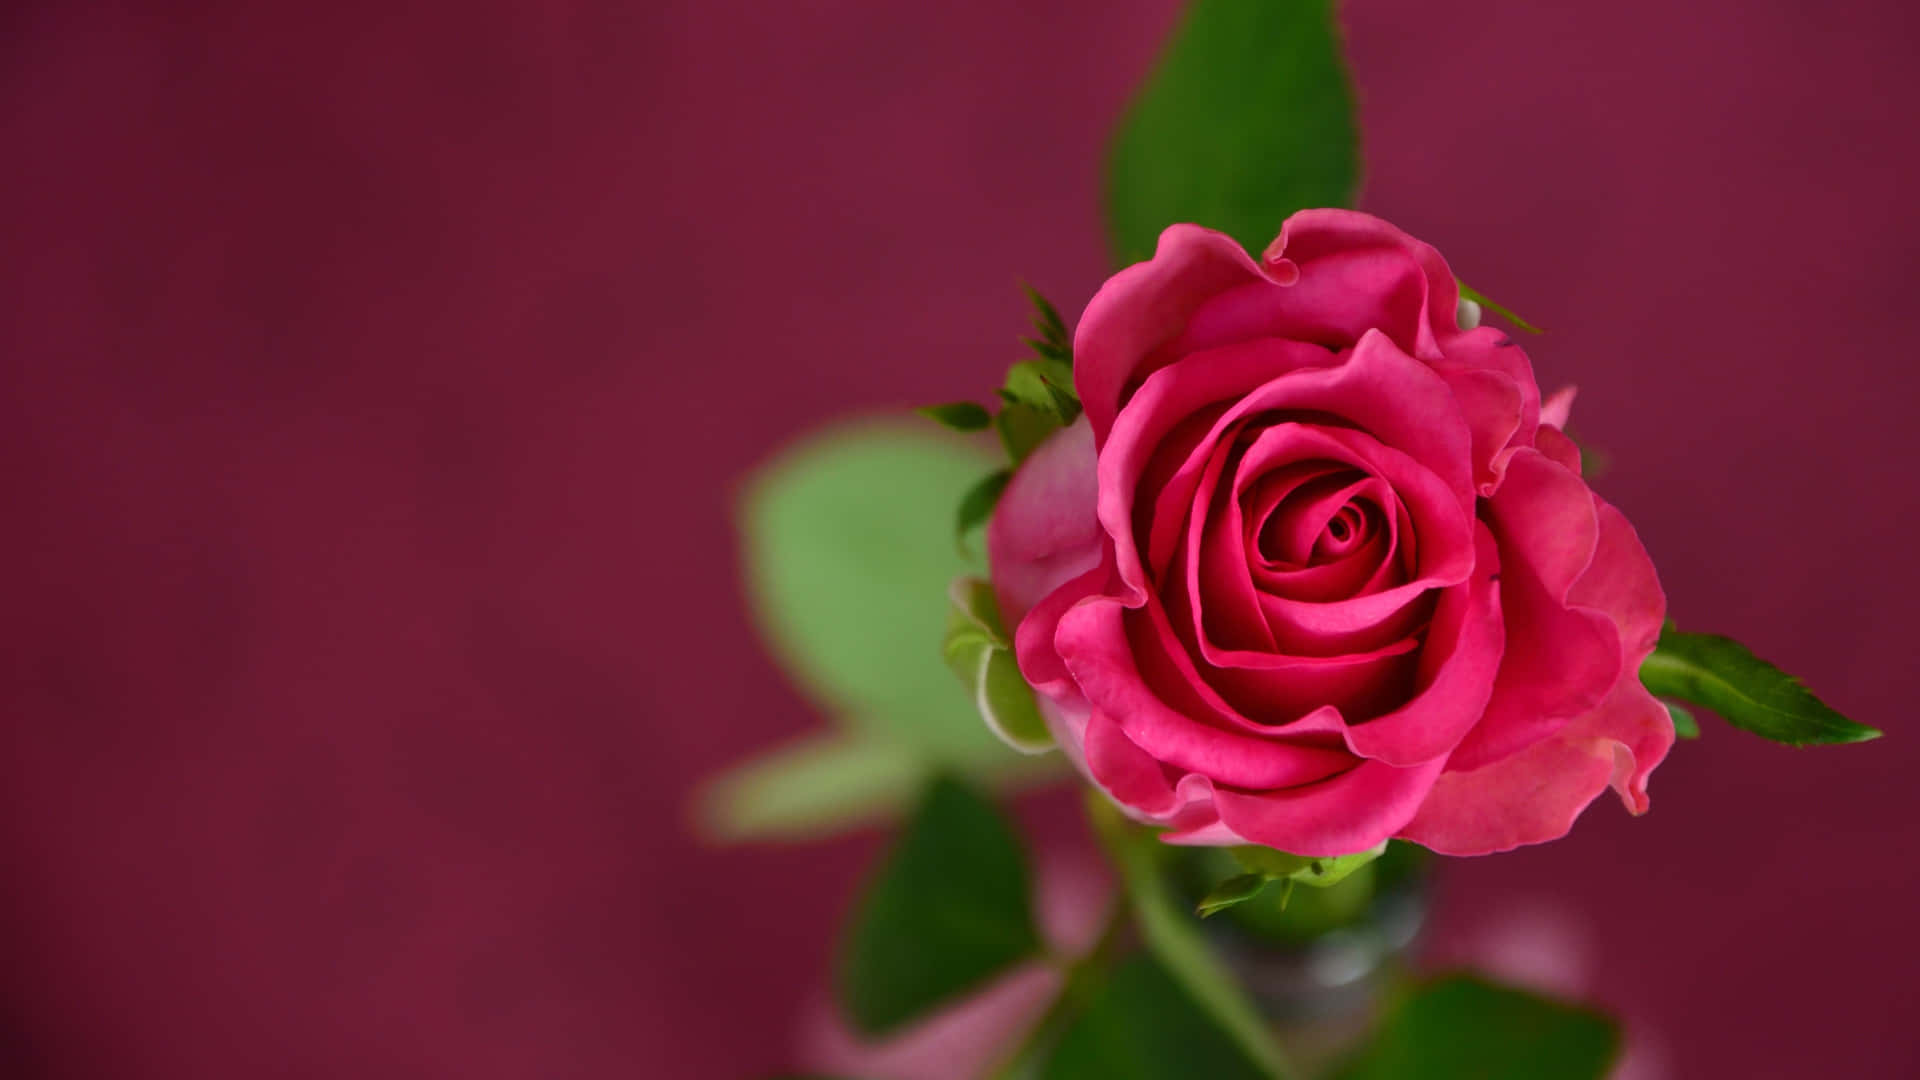 Eniøjnefaldende Rød Rose På En Sort Baggrund.